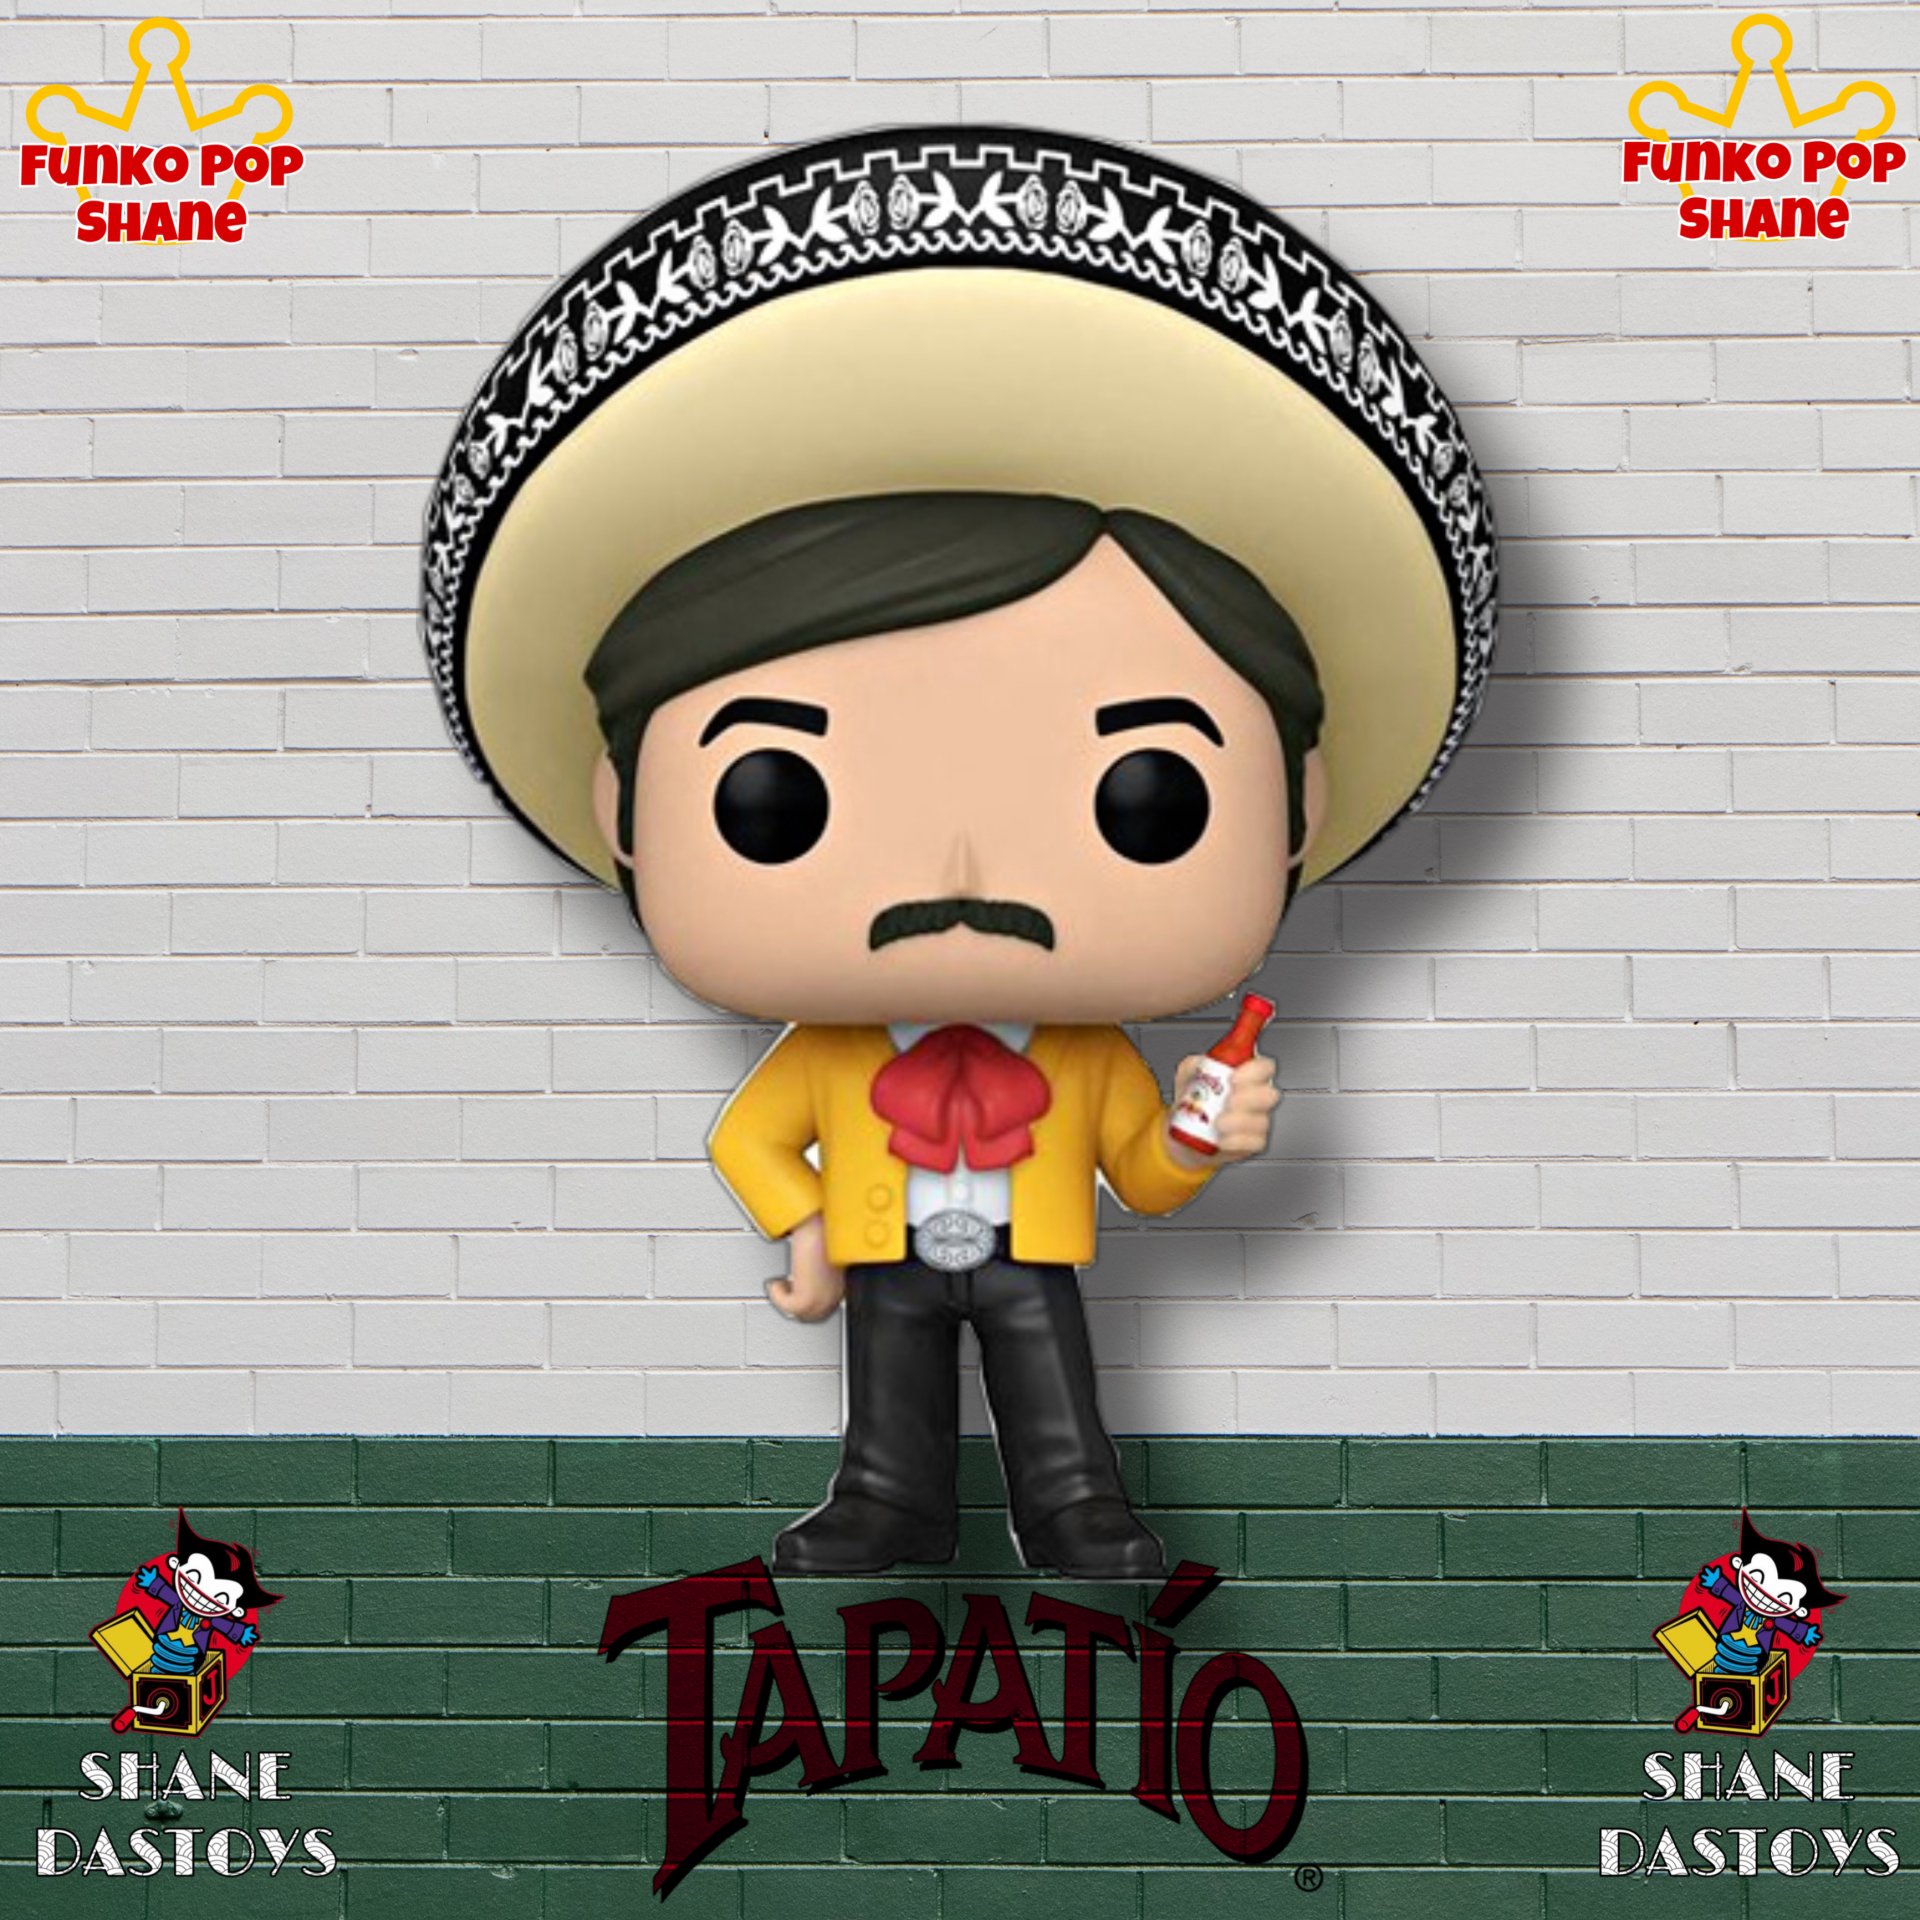 Funko Pop! The Tapatio